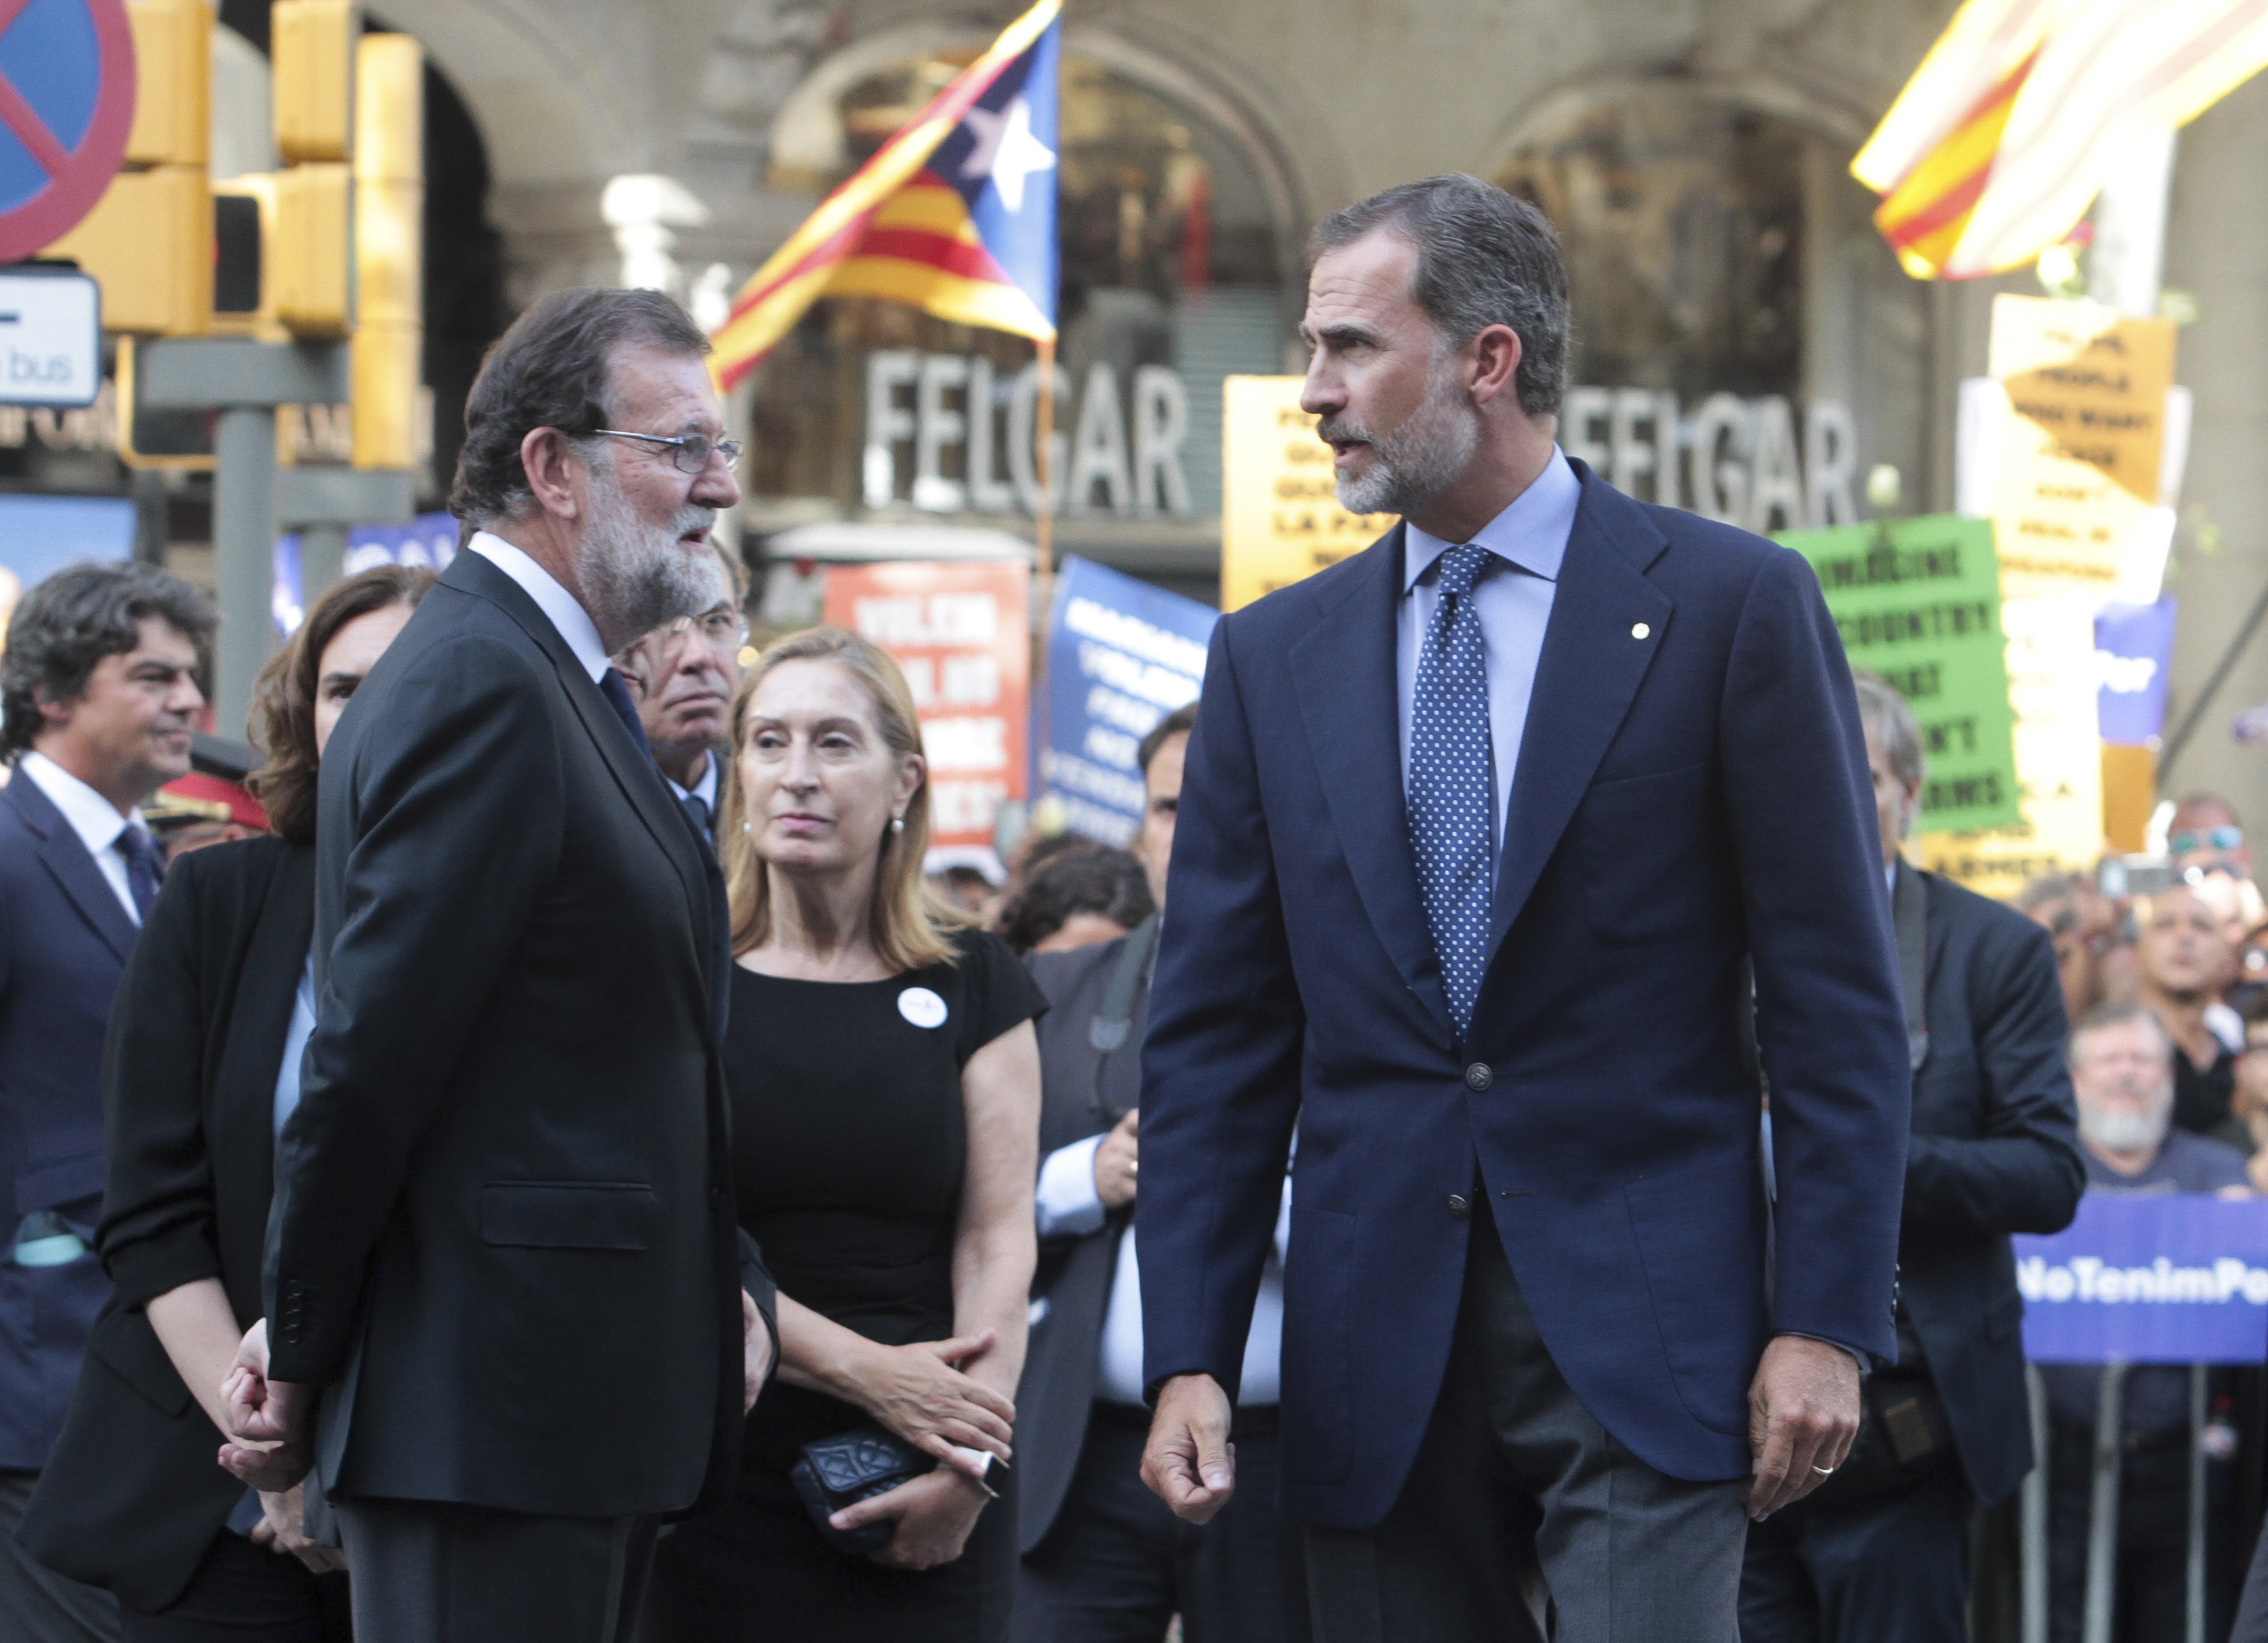 L'extrema dreta diu que Rajoy odia Felip VI